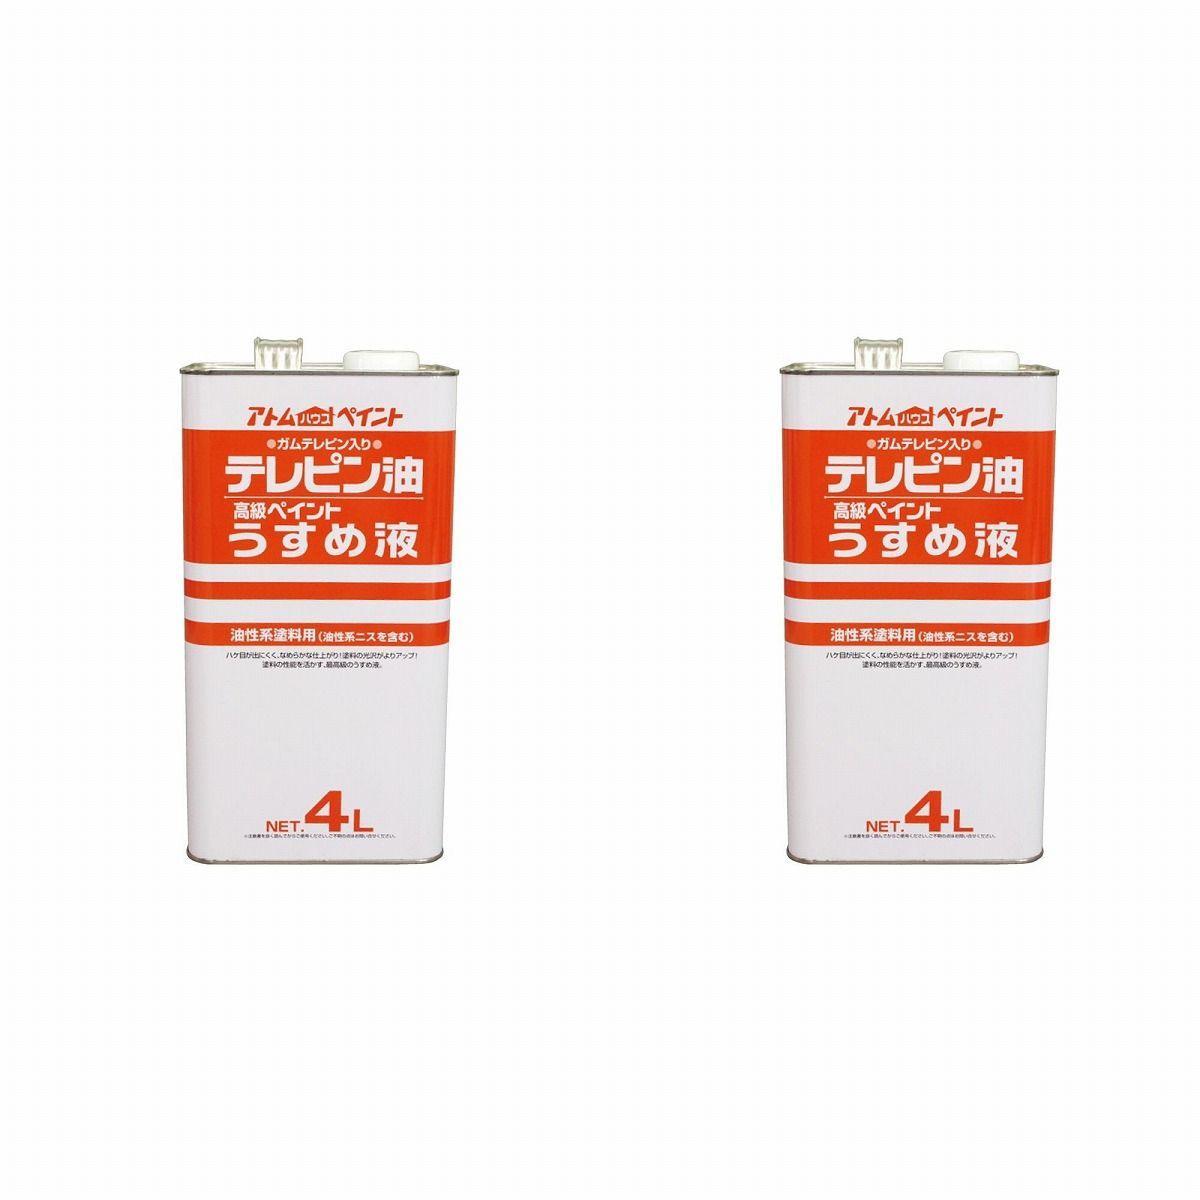 アトムハウスペイント テレピン油 4L 2缶セット【BT-58】 バックティースショップ メルカリ